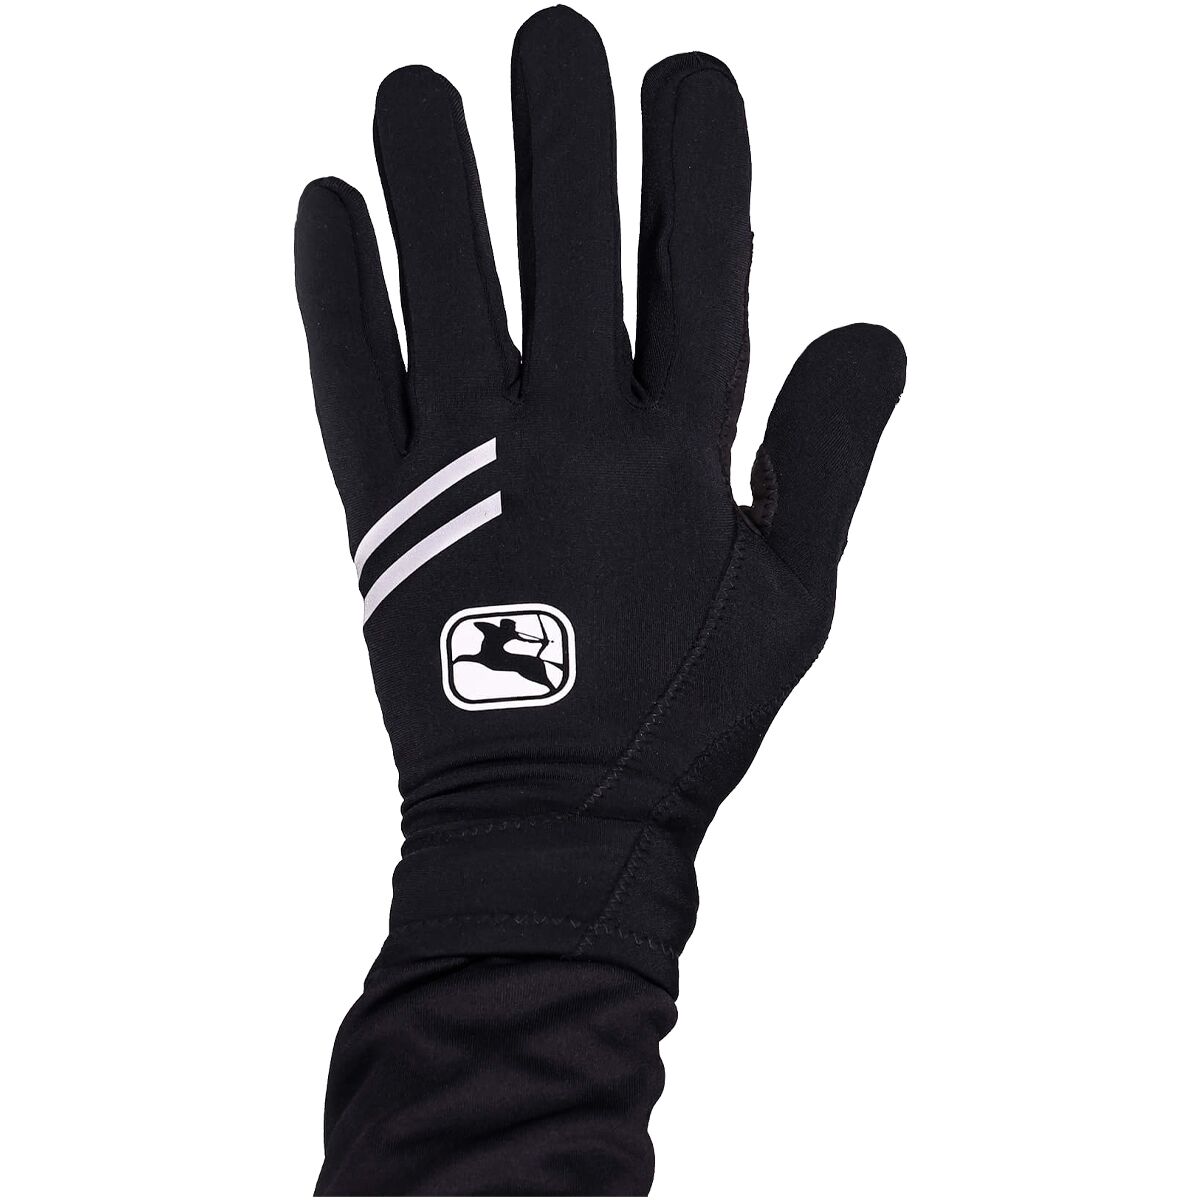 Giordana G-Shield Thermal Glove - Men's